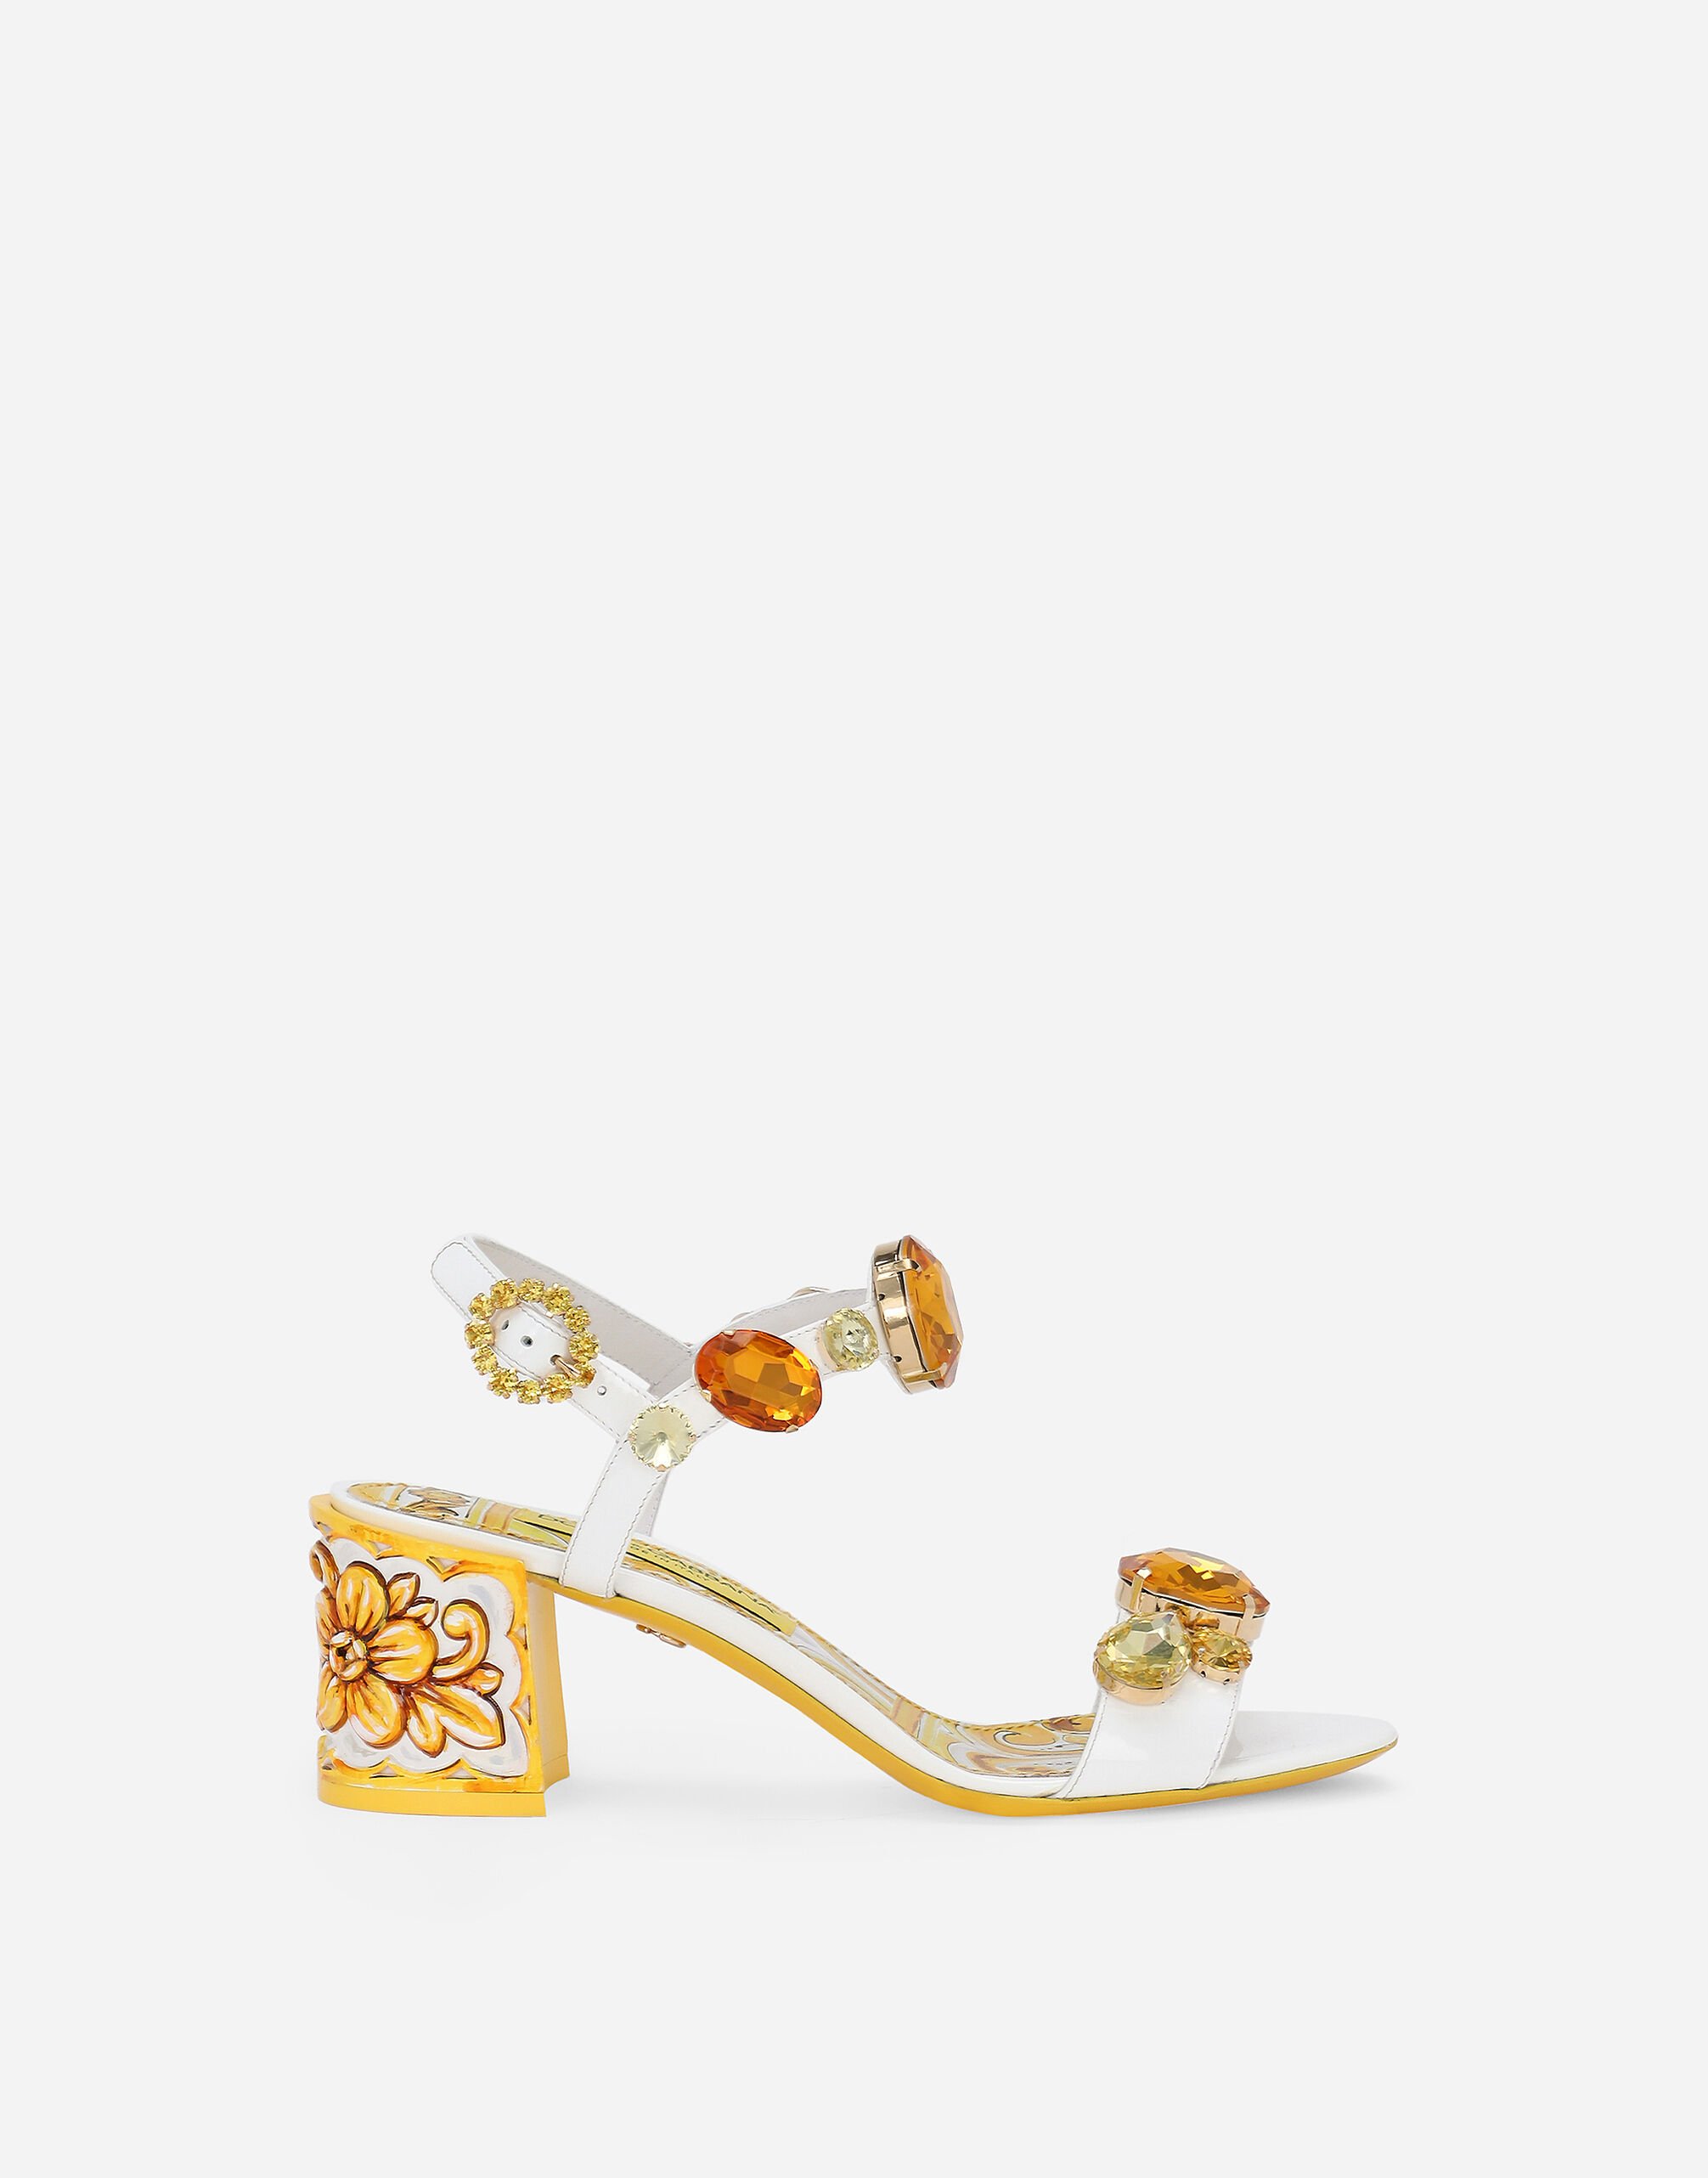 Dolce & Gabbana Sandalette aus Lackleder mit bemaltem Absatz und mit Schmucksteinen bestickt Gelb BB6003AW050